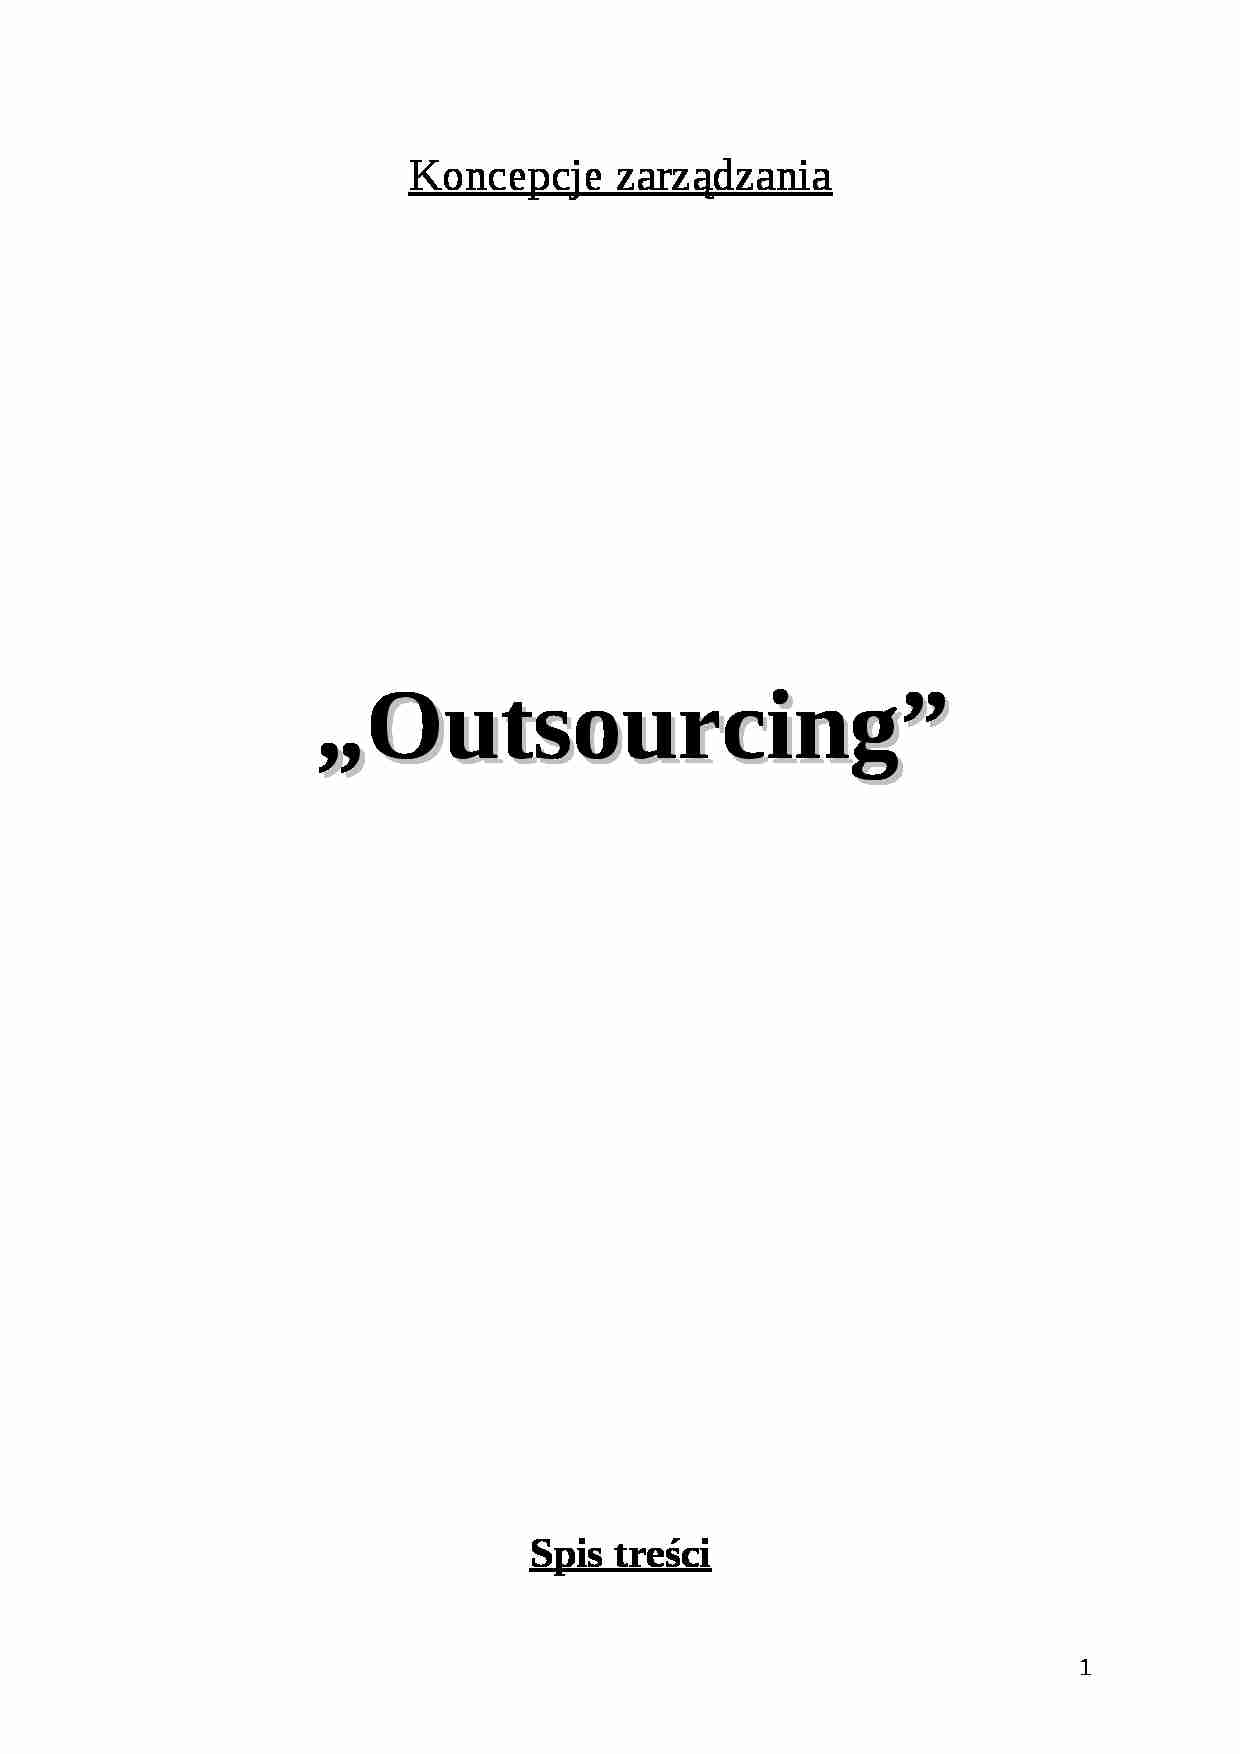 Outsourcing - koncepcje zarządzania - strona 1